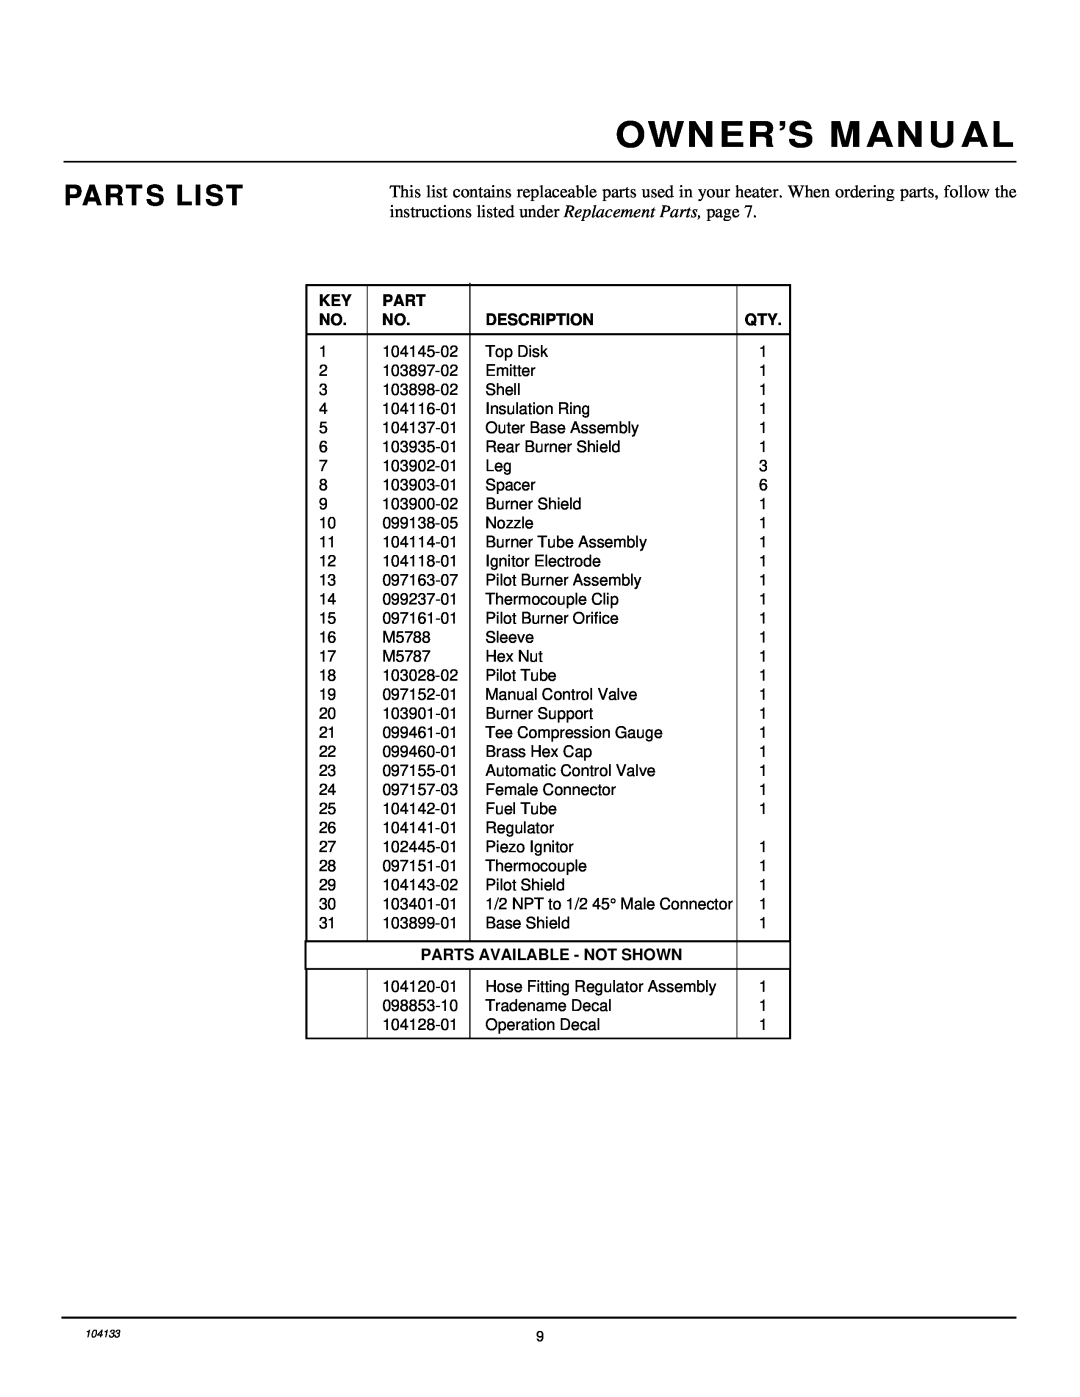 Desa TC250RNG owner manual Parts List, Description, Parts Available - Not Shown 